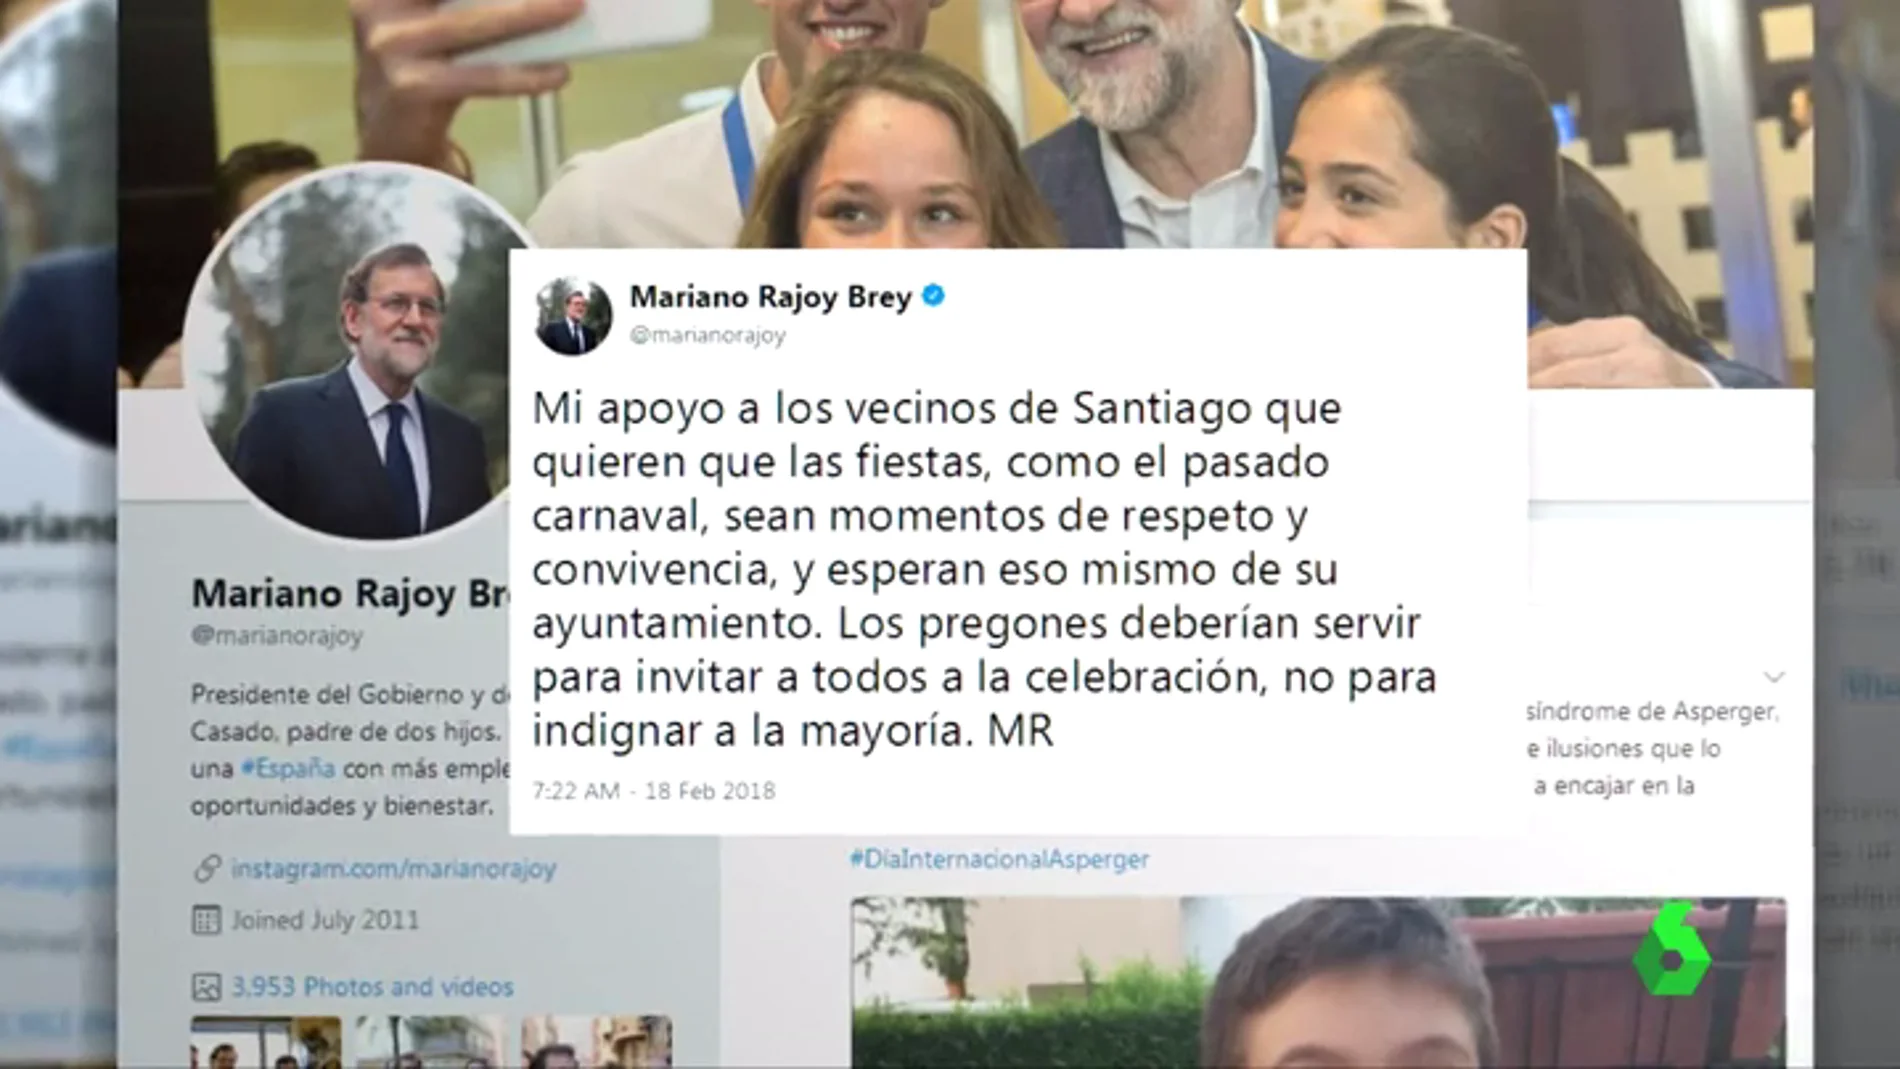 Mariano Rajoy pide no "indignar a la mayoría" tras la polémica en el pregón del carnaval de Santiago